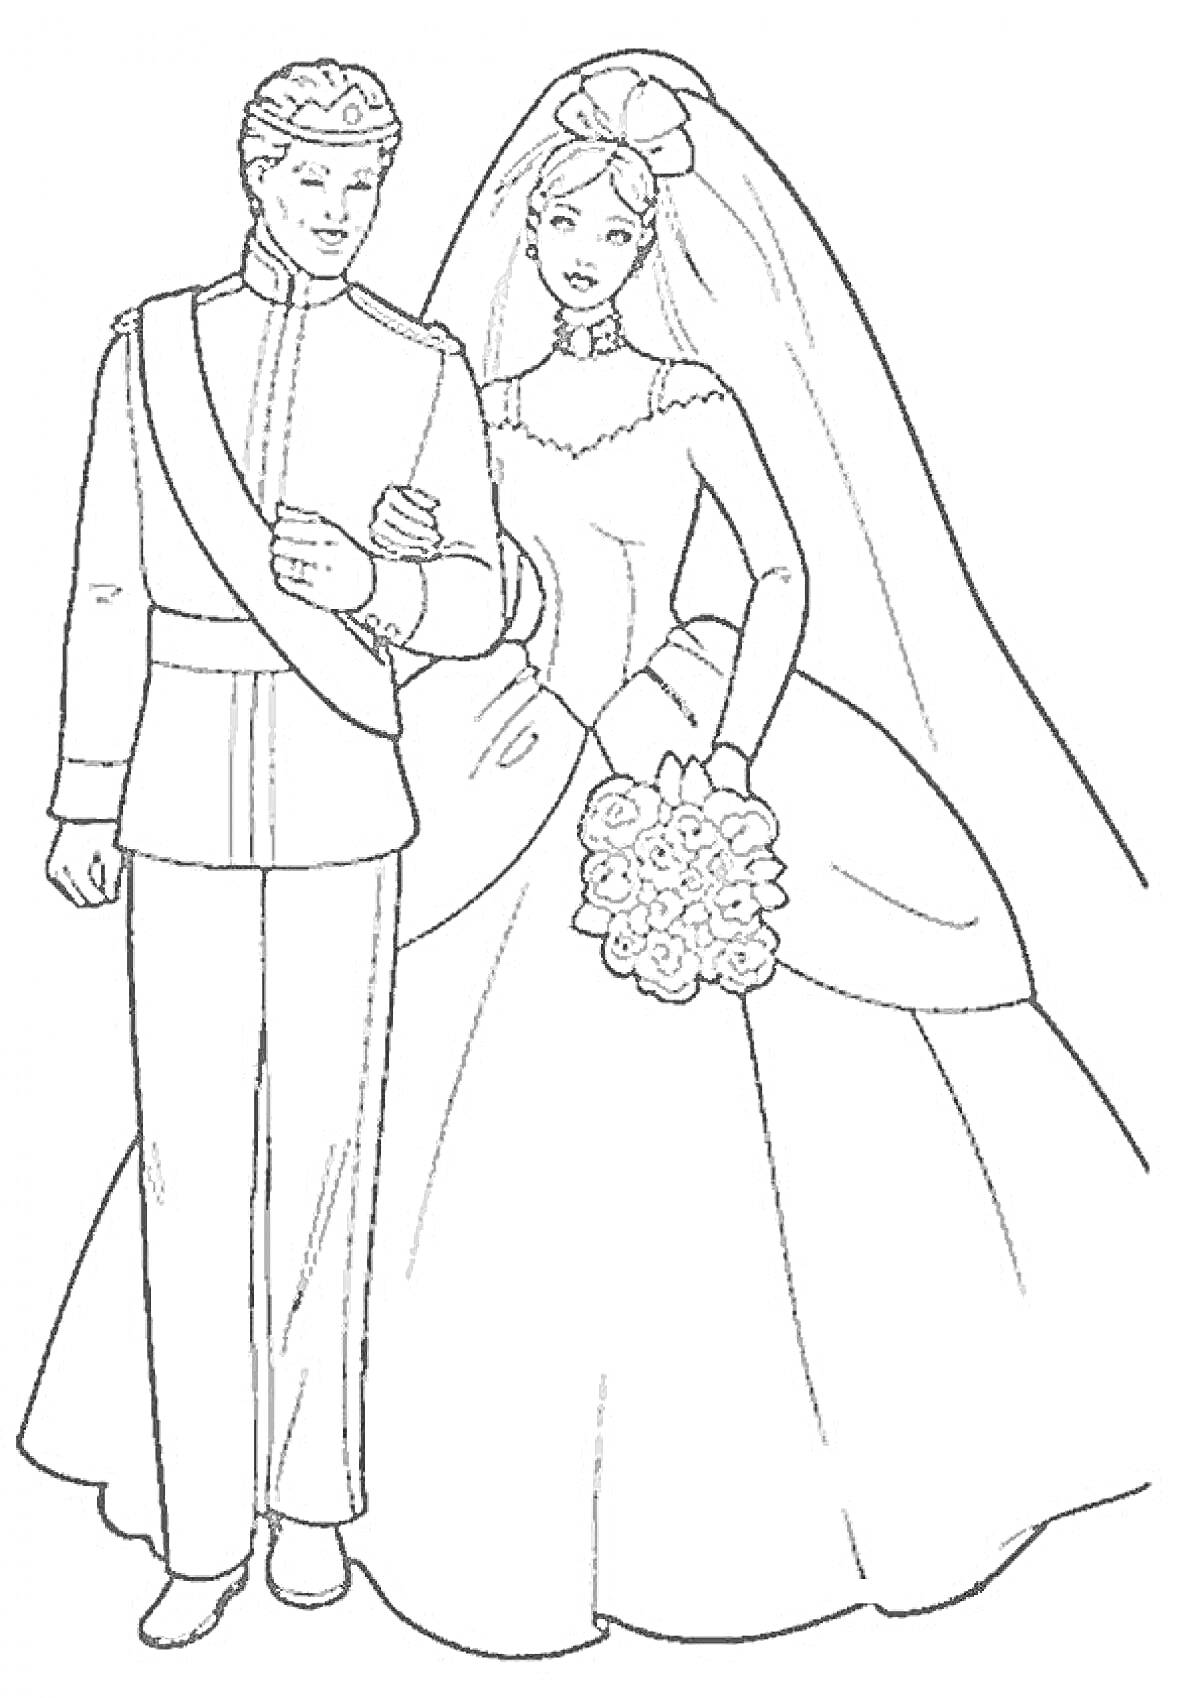 Принц и принцесса на свадьбе, принц в форме с эполетом, принцесса в свадебном платье с букетом цветов